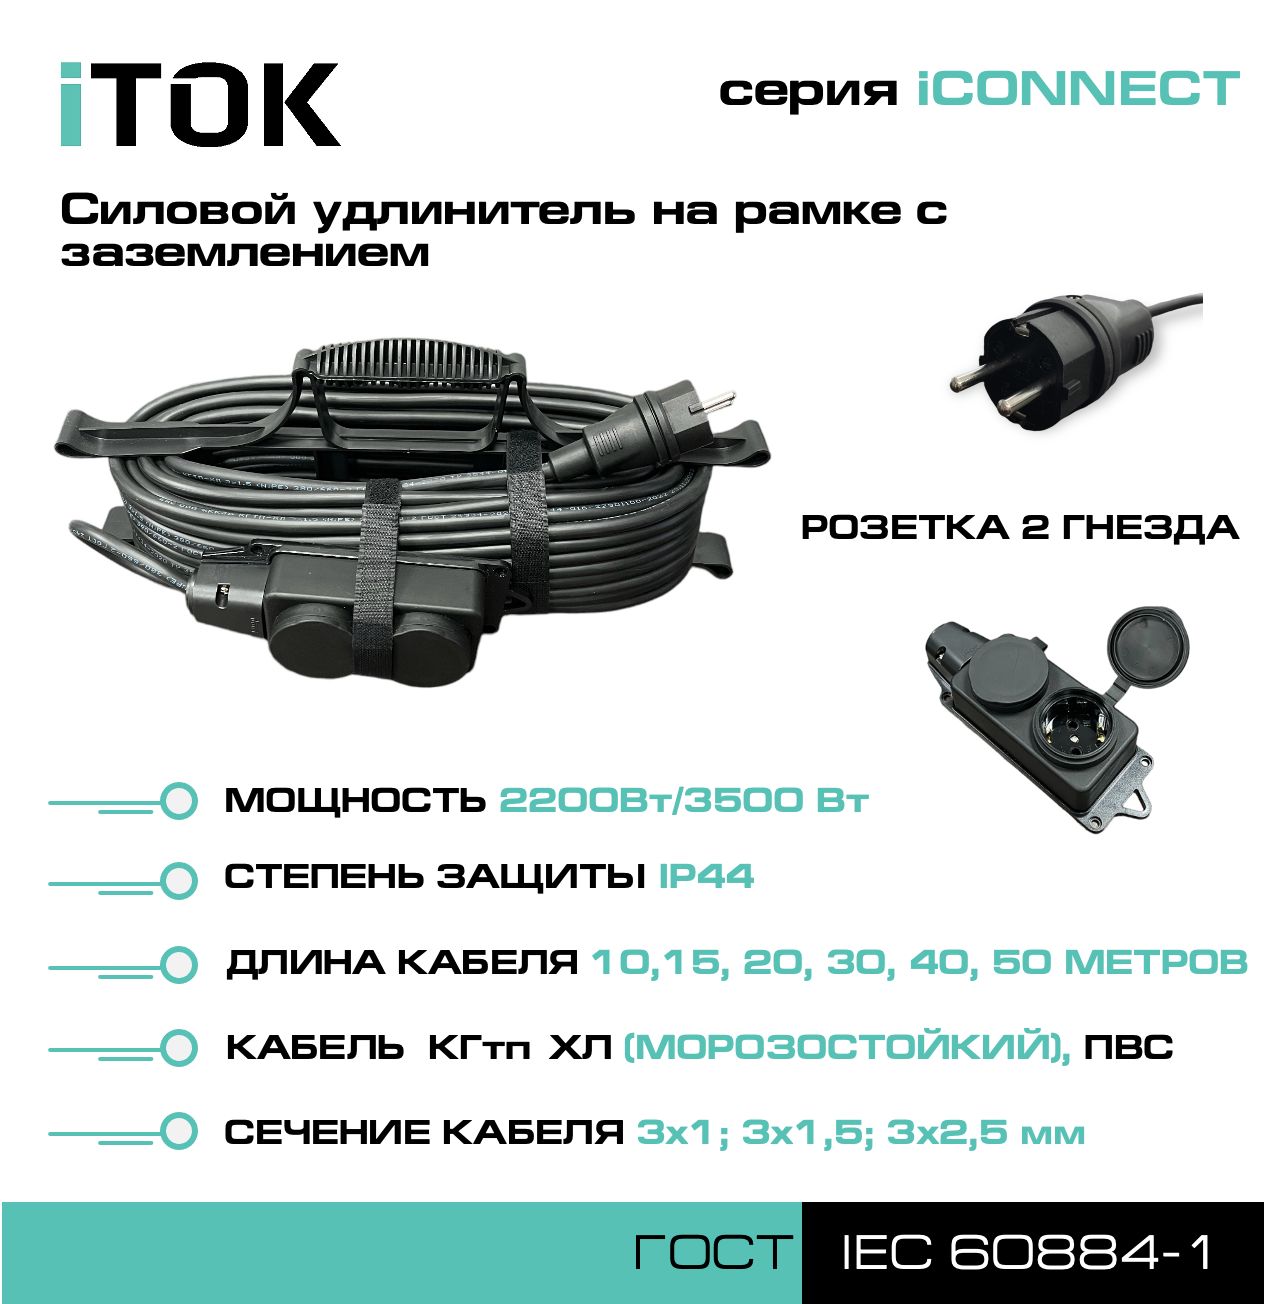 Удлинитель на рамке с заземлением серии iTOK iCONNECT КГтп-ХЛ 3х2,5 мм 2 гнезда IP44 15 м кабель itok